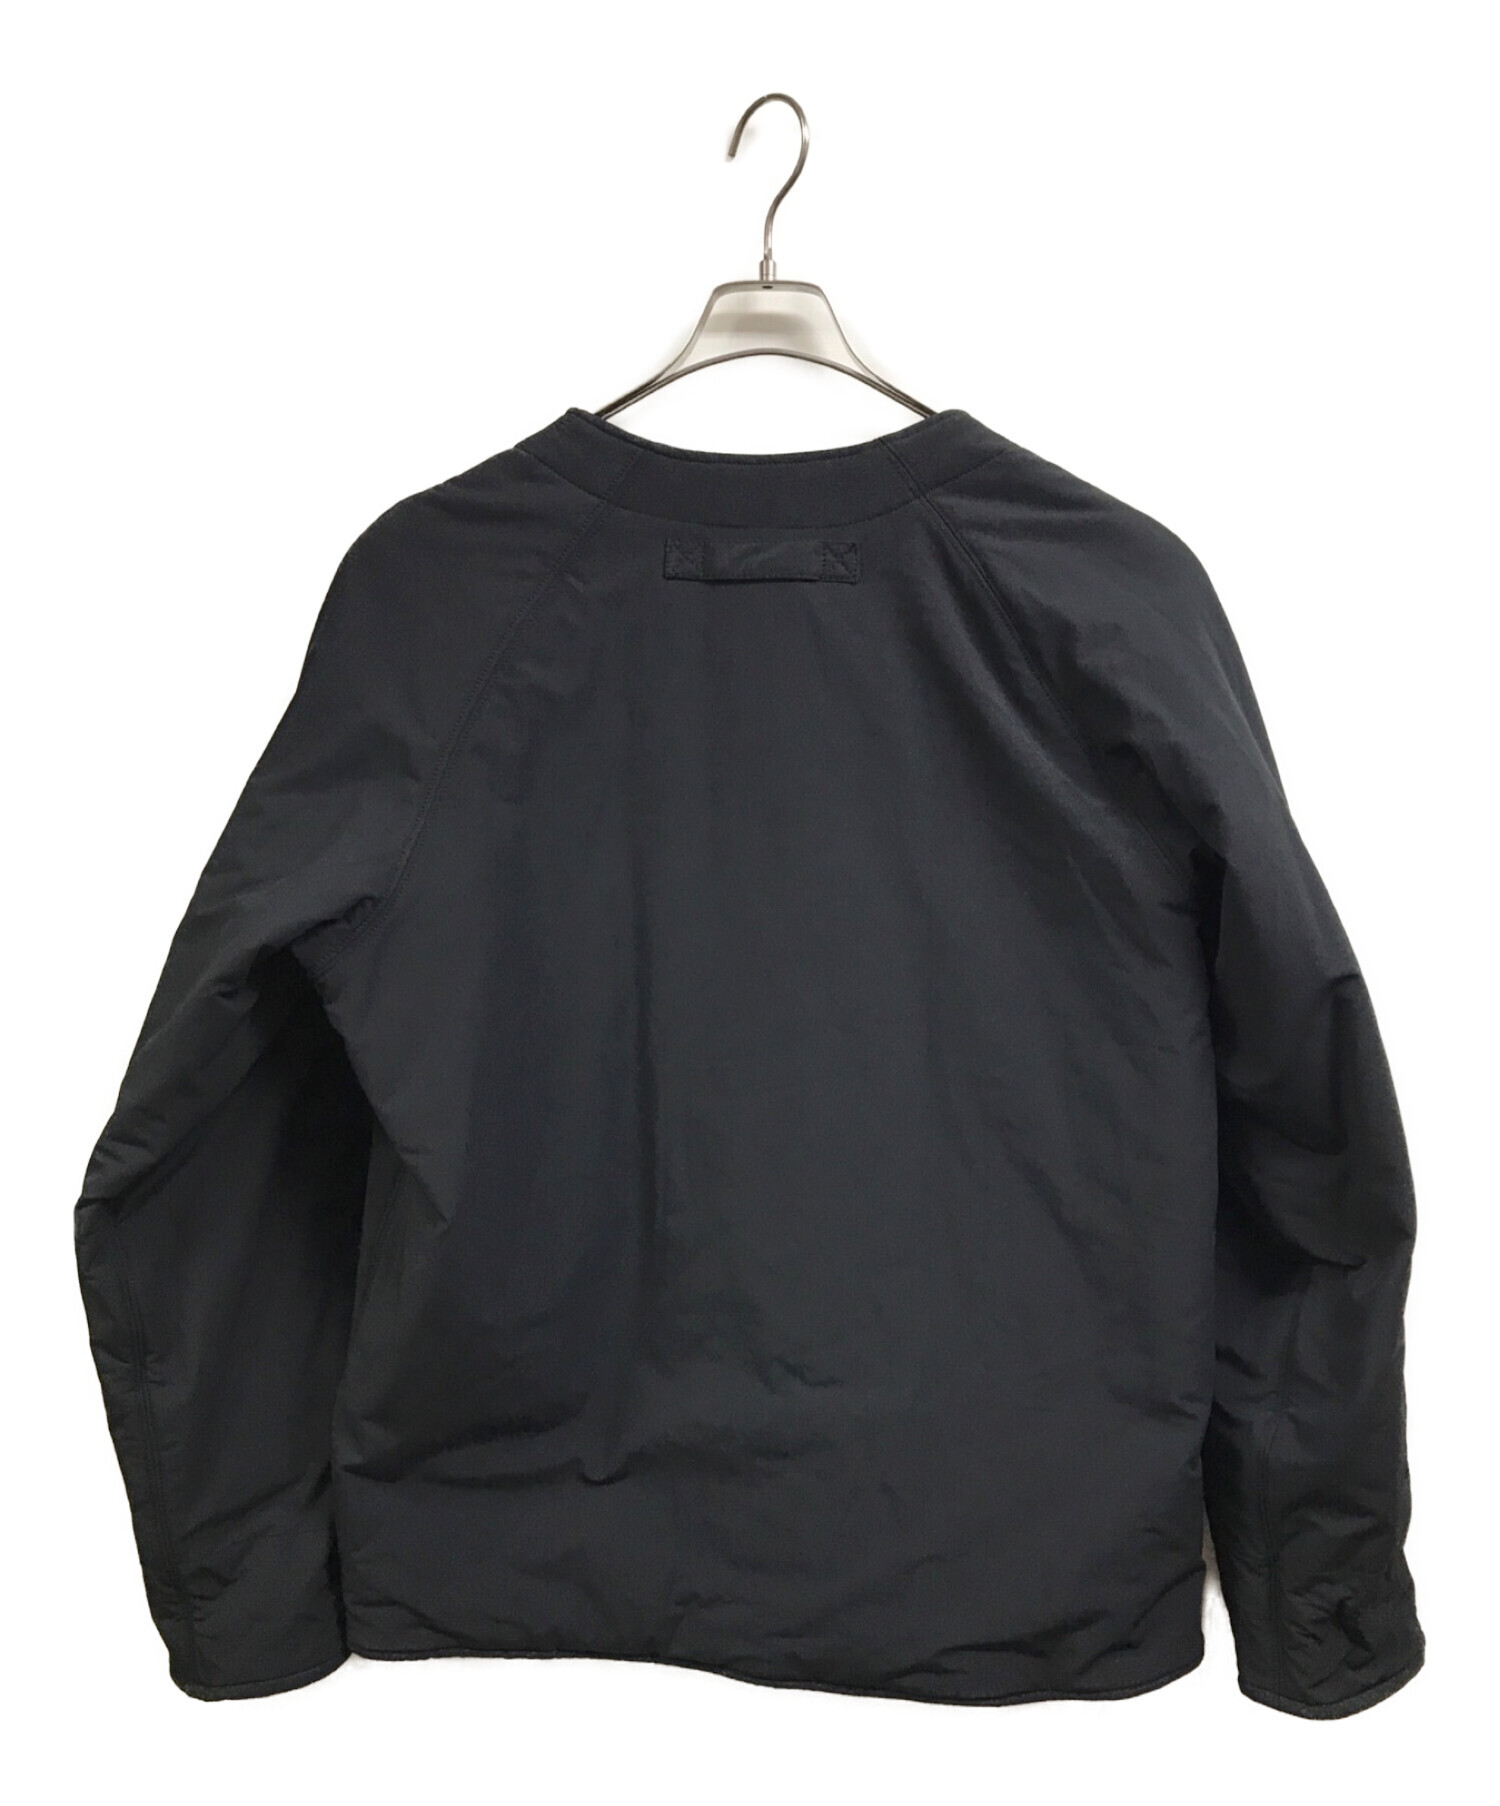 【通販安心】マウントレーニアデザイン ダウンジャケット size:L ブラック ジャケット・アウター